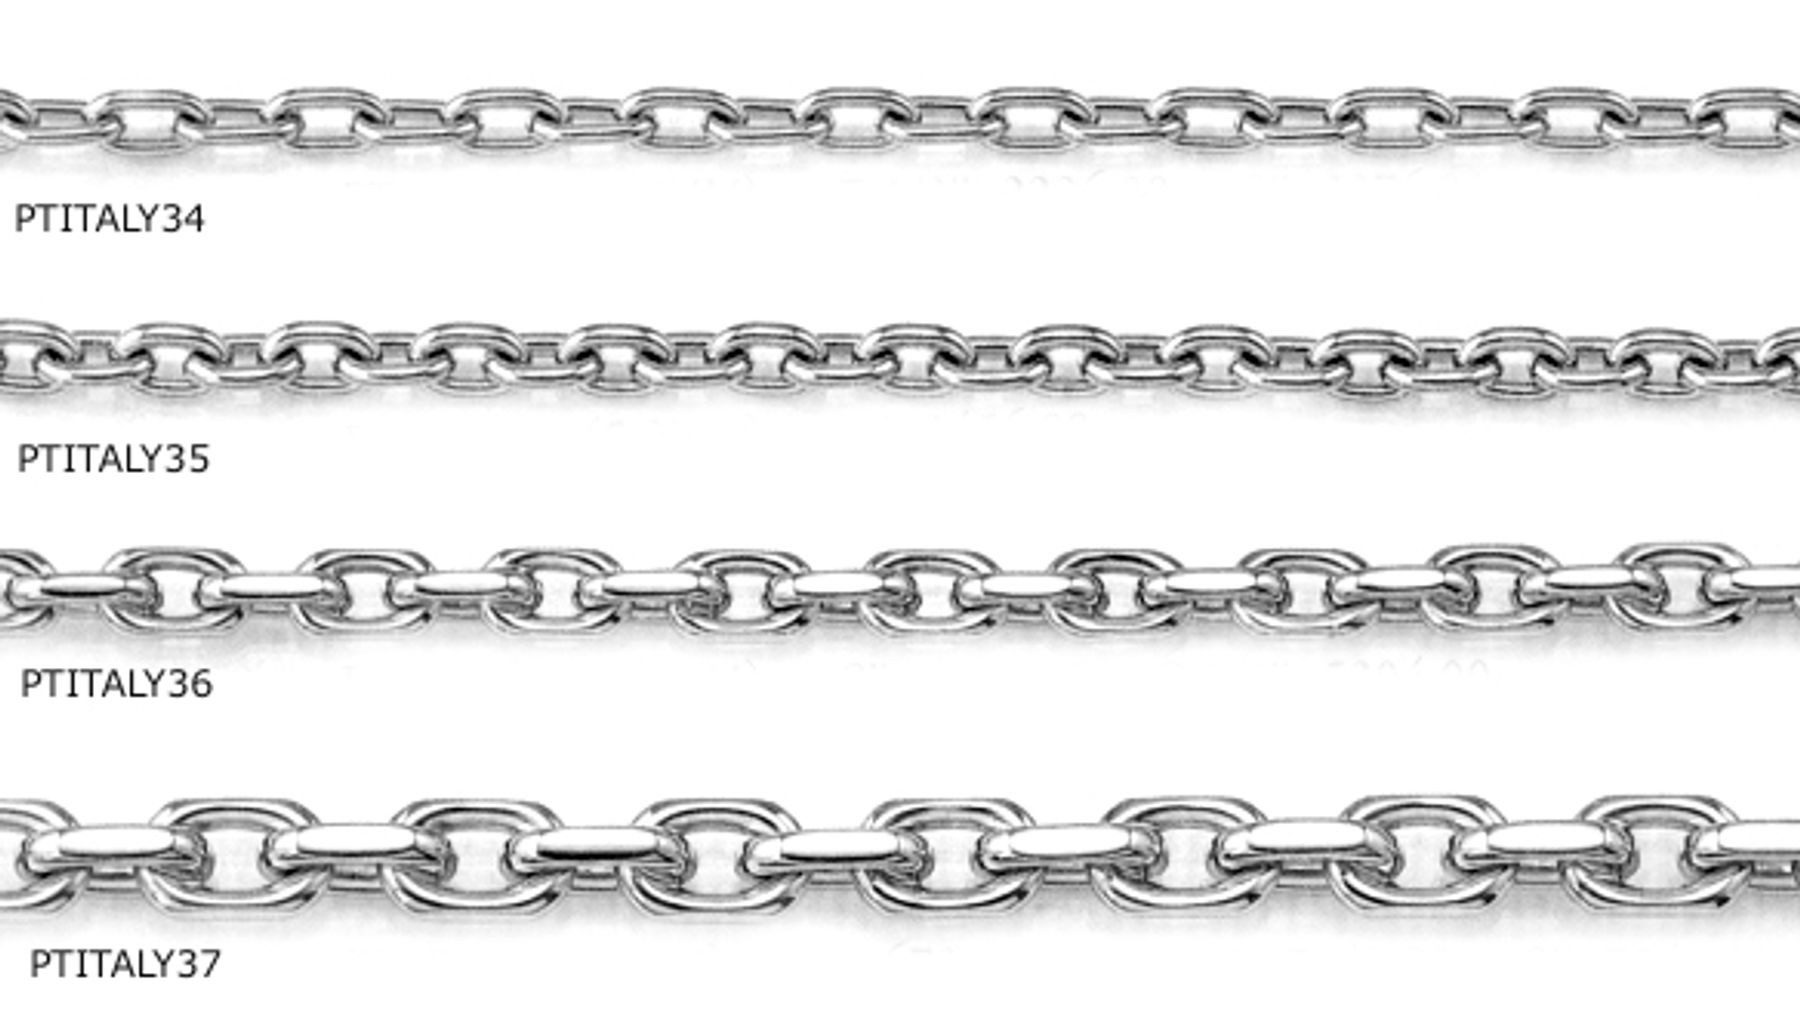 Platinum Fancy Link Chain and Bracelet. View Platinum Chains Bracelets